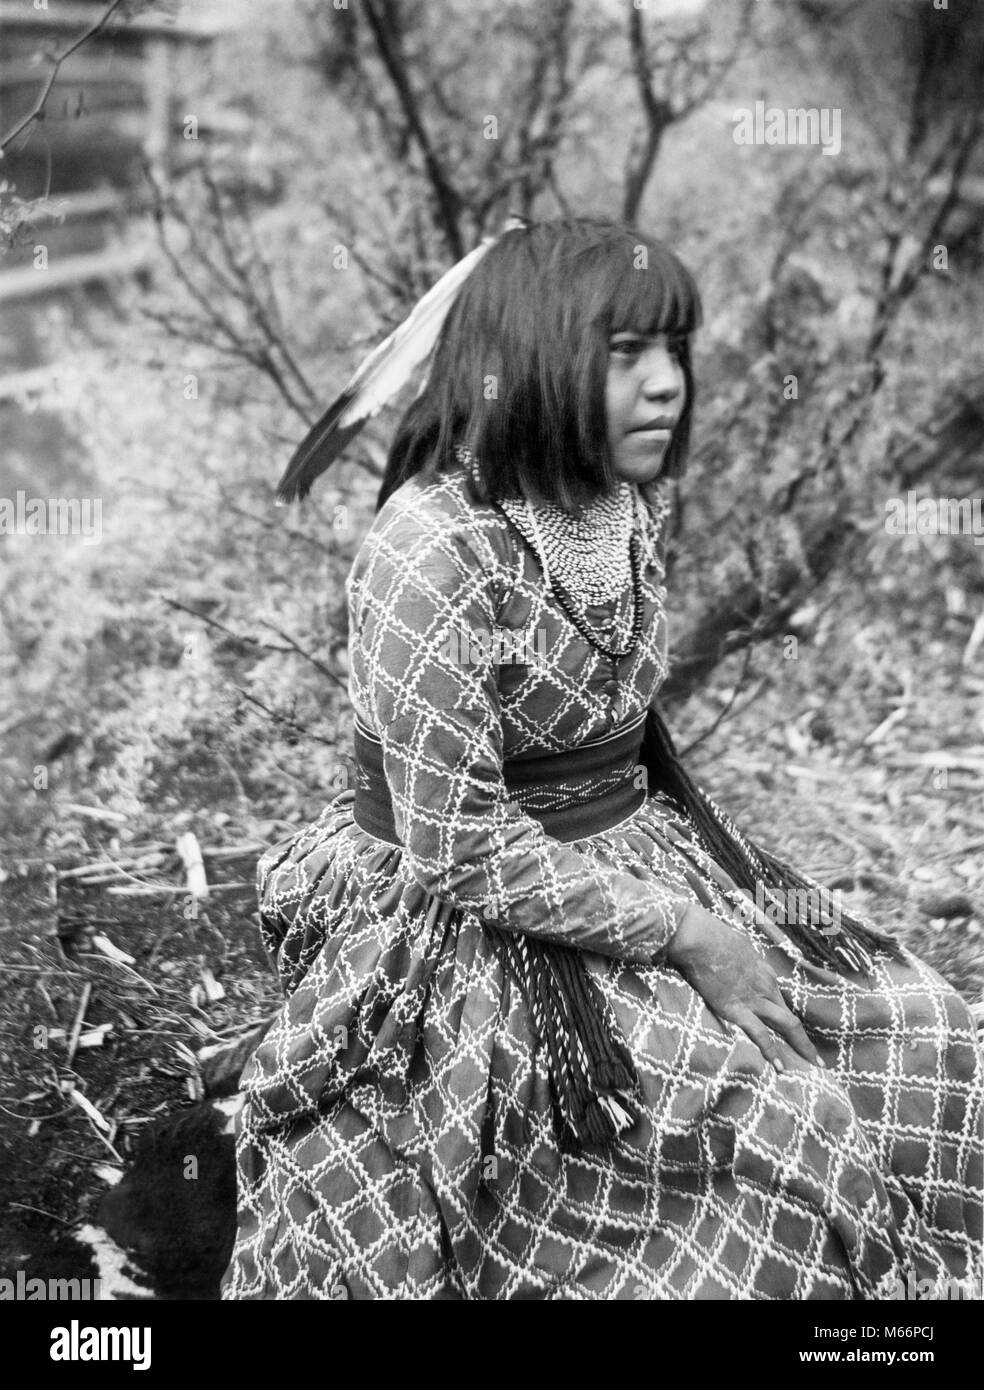 1890s 1899 ritratto dei nativi americani HAVASUPAI donna indiana da G. WHARTON JAMES - Q73436 CPC001 HARS UNA SOLA PERSONA HOME vita seduti NEGLI STATI UNITI spazio copia di metà lunghezza cari Indiani ragazza adolescente NOSTALGIA 20-25 anni acconciatura 18-19 anni PRIDE 1890 ARIZONA ADOLESCENTE NATIVE AMERICAN NATIONAL PARK il novellame nativi americani giovane donna adulta 1899 AZ B&W BANGS BIANCO E NERO COCONINO COUNTY GRAND CANYON HAVASUPAI in vecchio stile persone Foto Stock